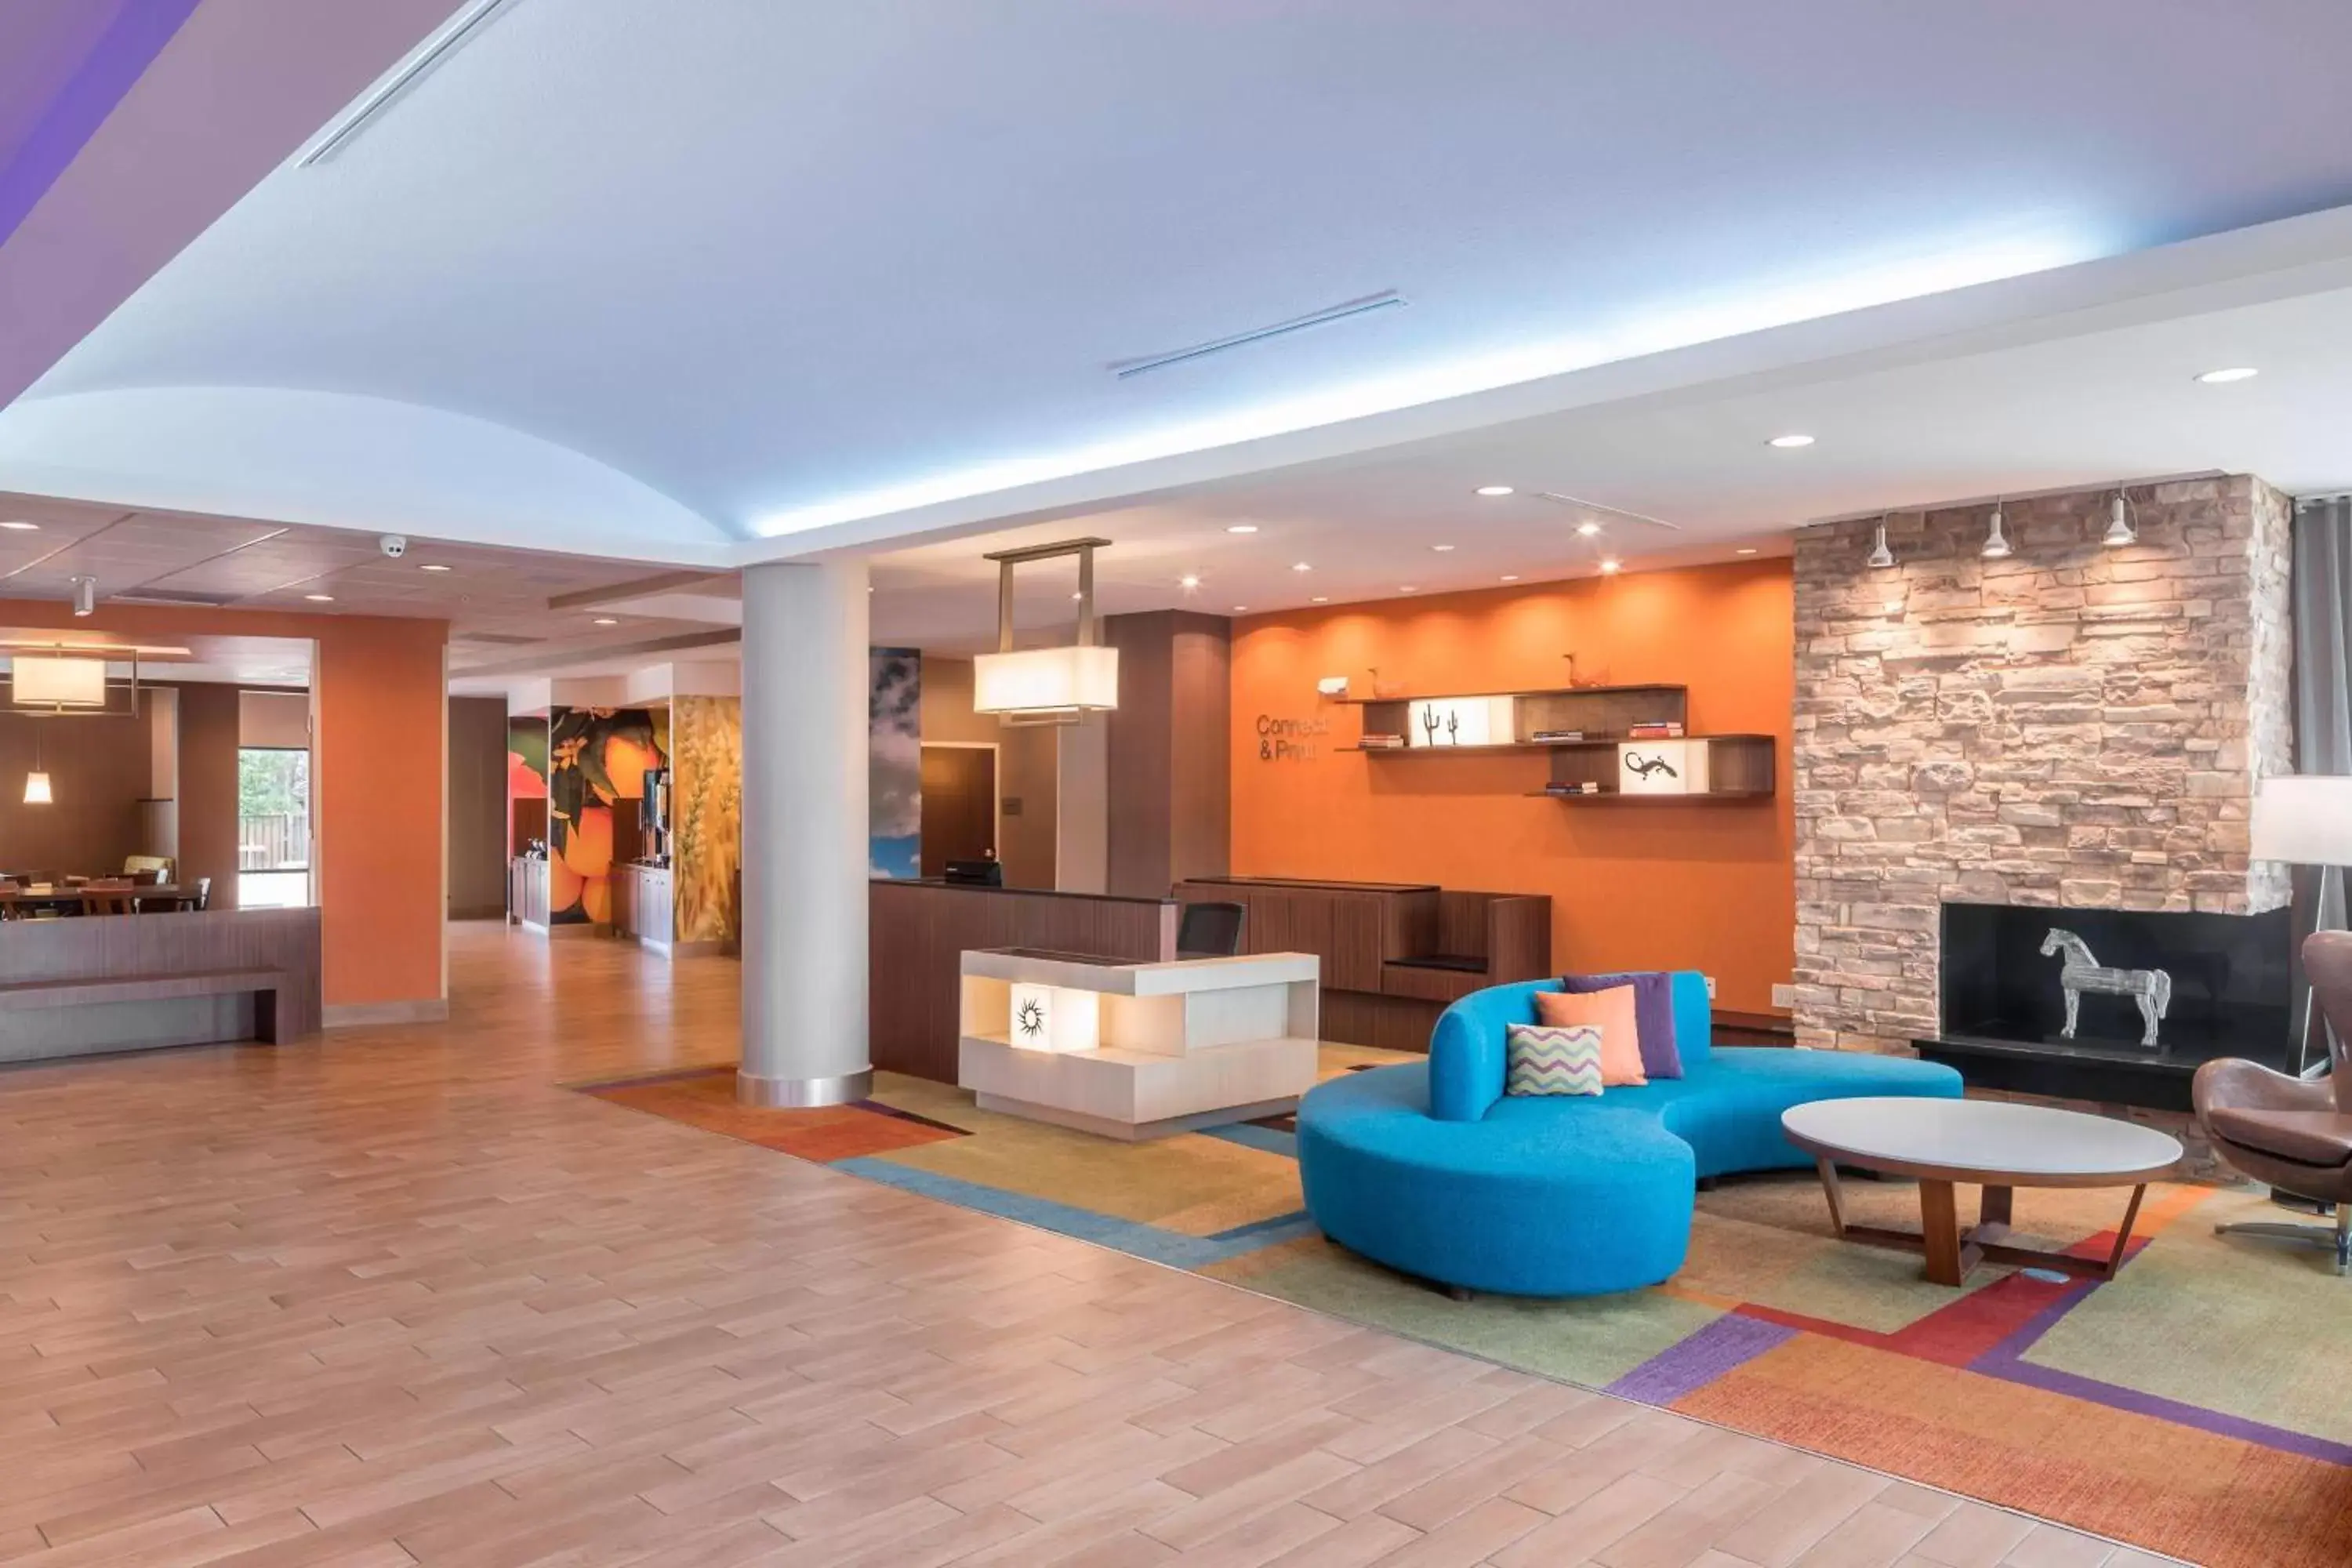 Lobby or reception, Lobby/Reception in Fairfield Inn & Suites by Marriott Houston Pasadena